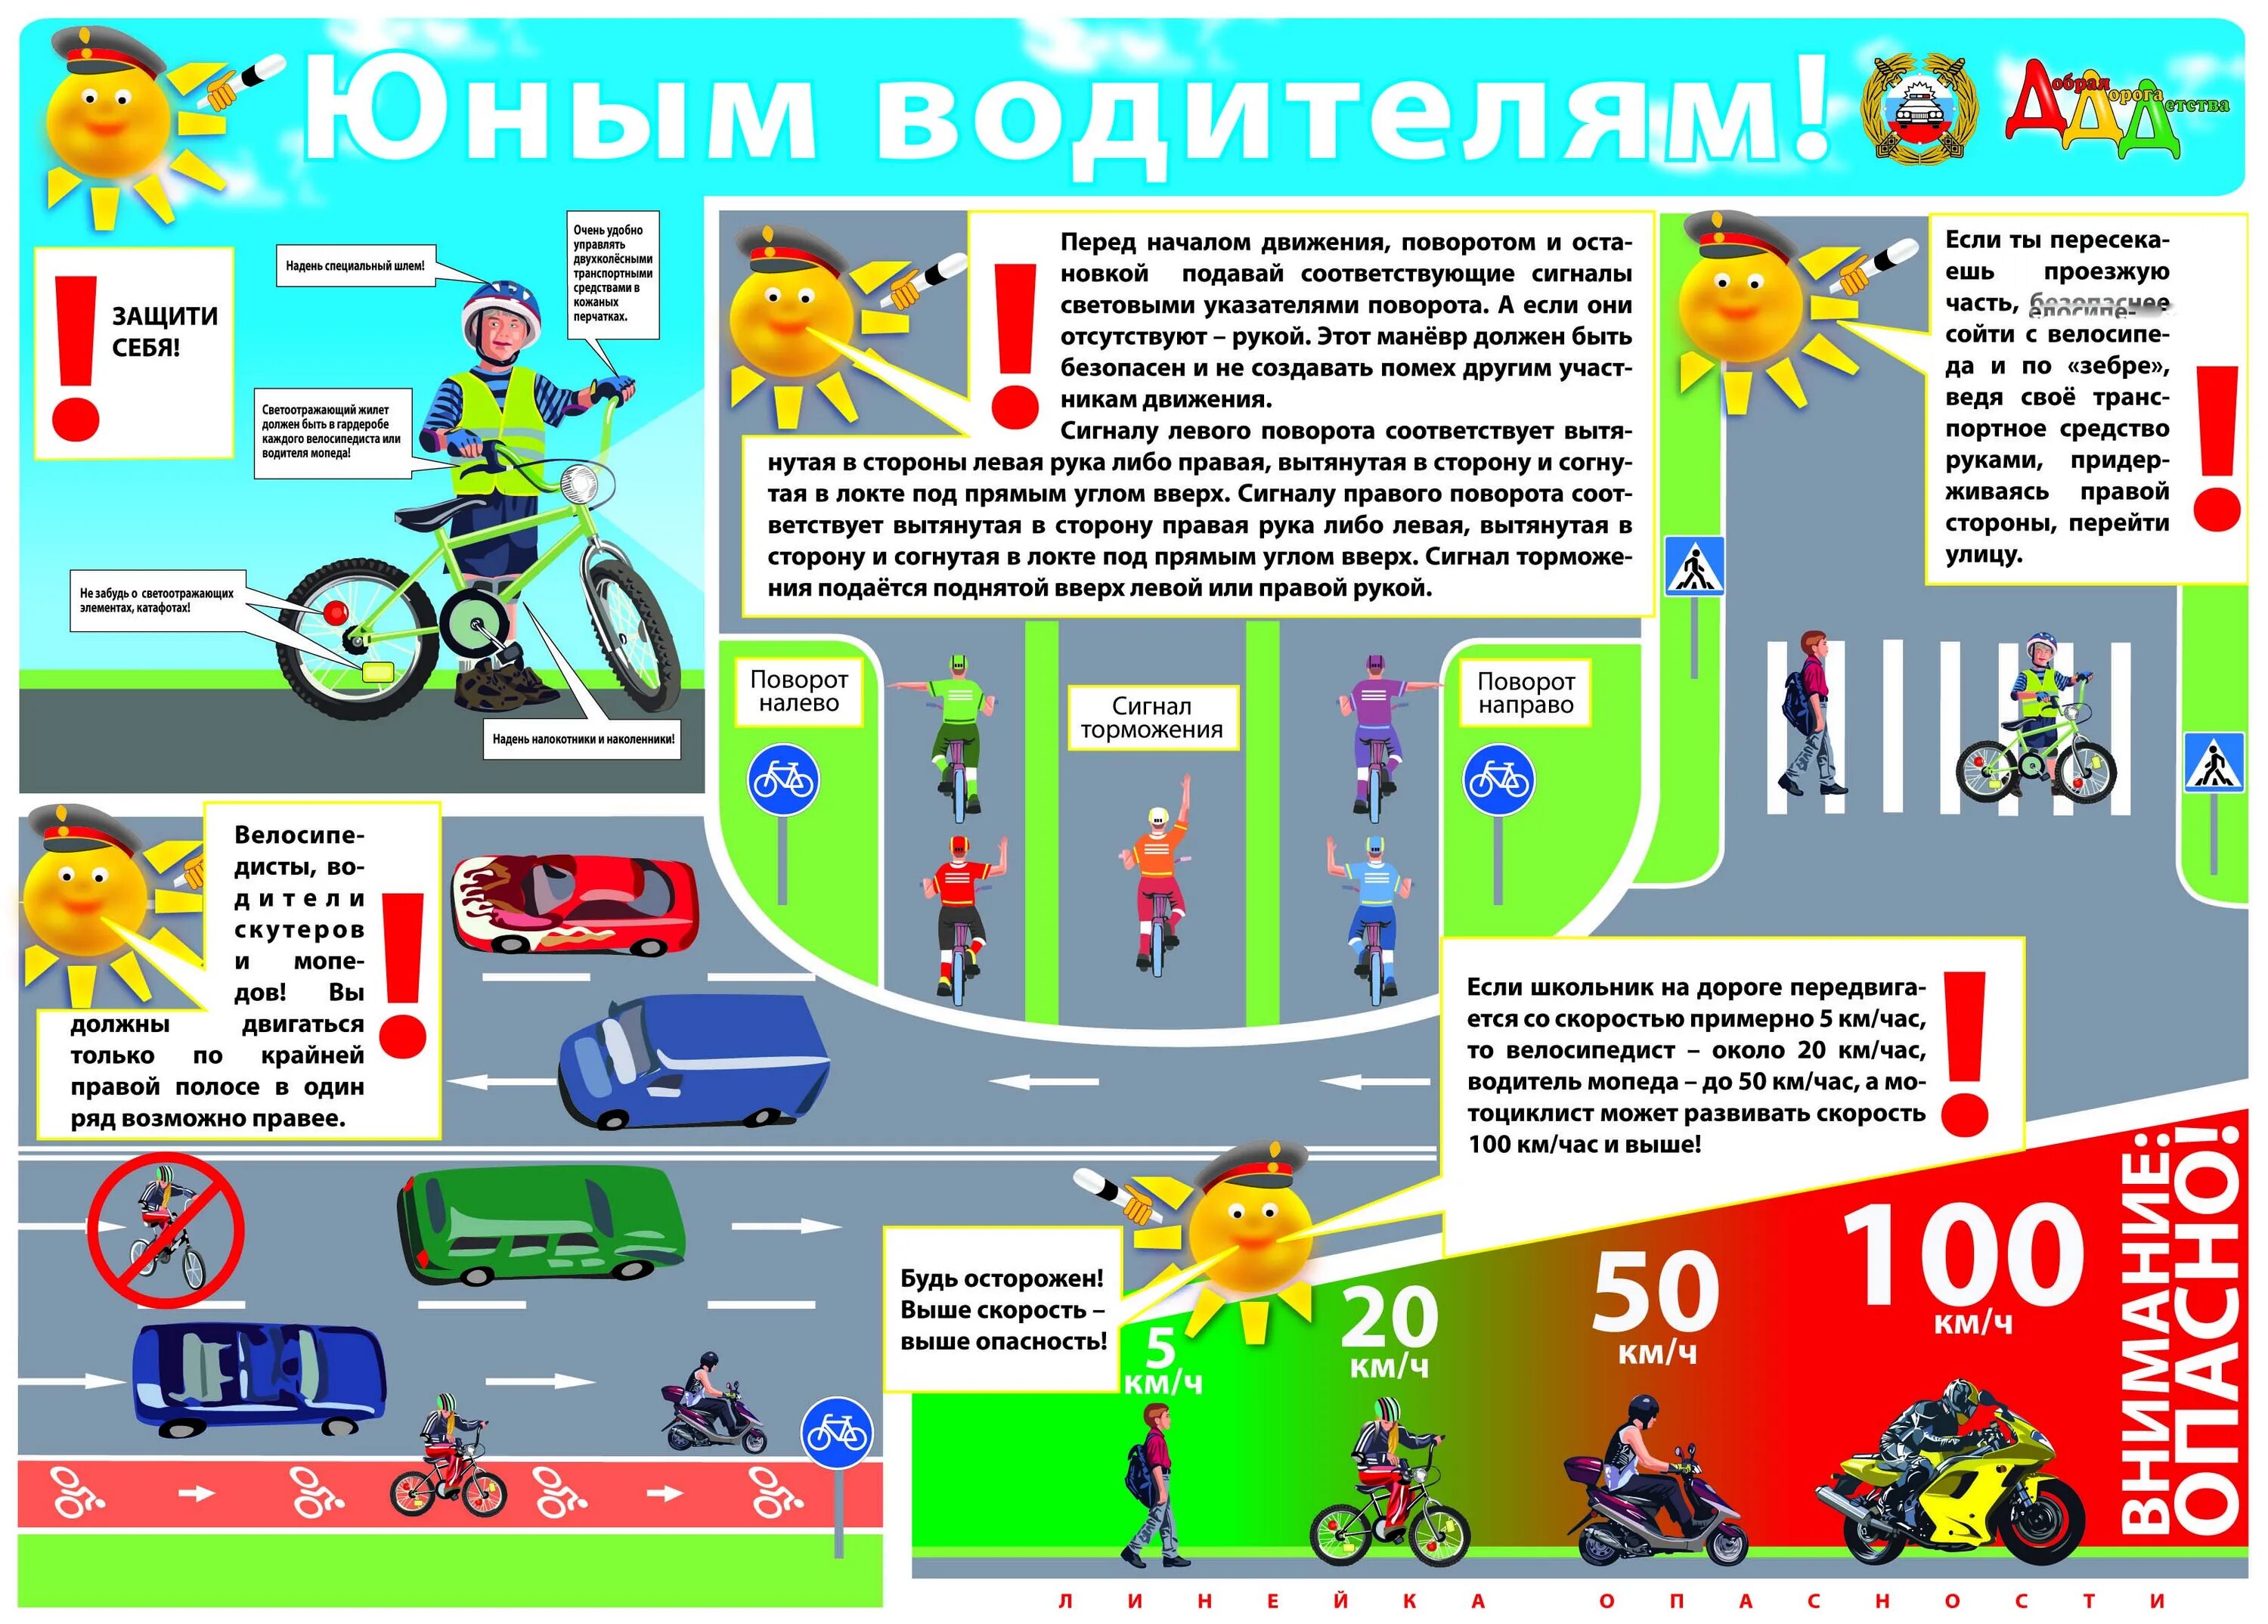 Пдд ц д е. Плакат правил дорожного движения. ПДД для велосипедистовэ для детей. Плакат по правилам дорожного движения для детей. Правило дорожного движение.